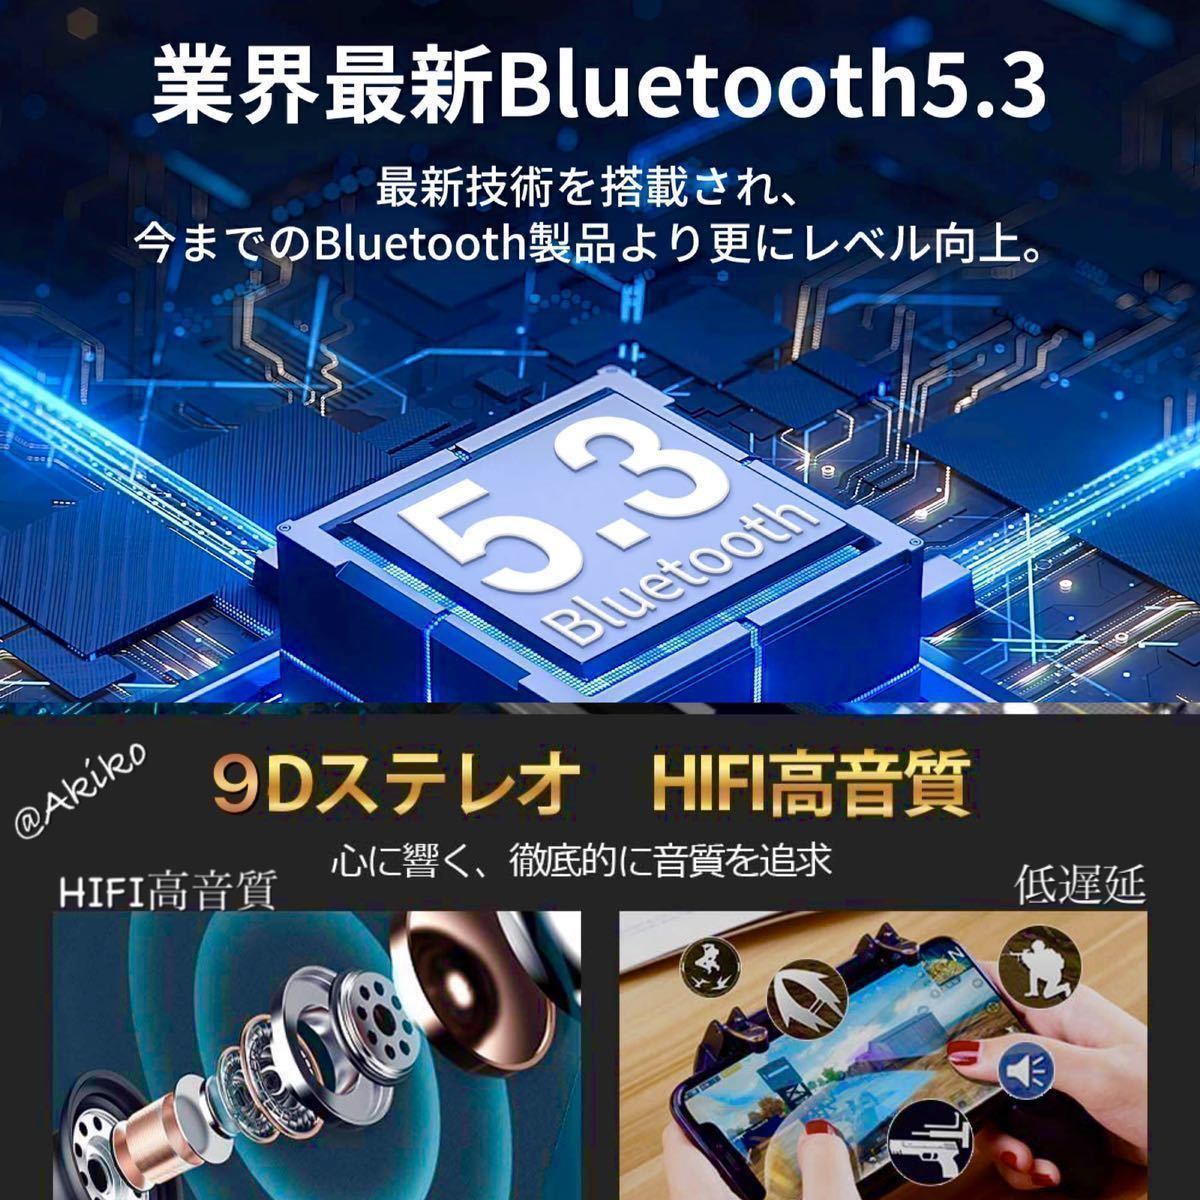 Bluetooth 5.3ワイヤレスイヤホン、バッテリー大容量2200mAh 初心者でも簡単_画像2